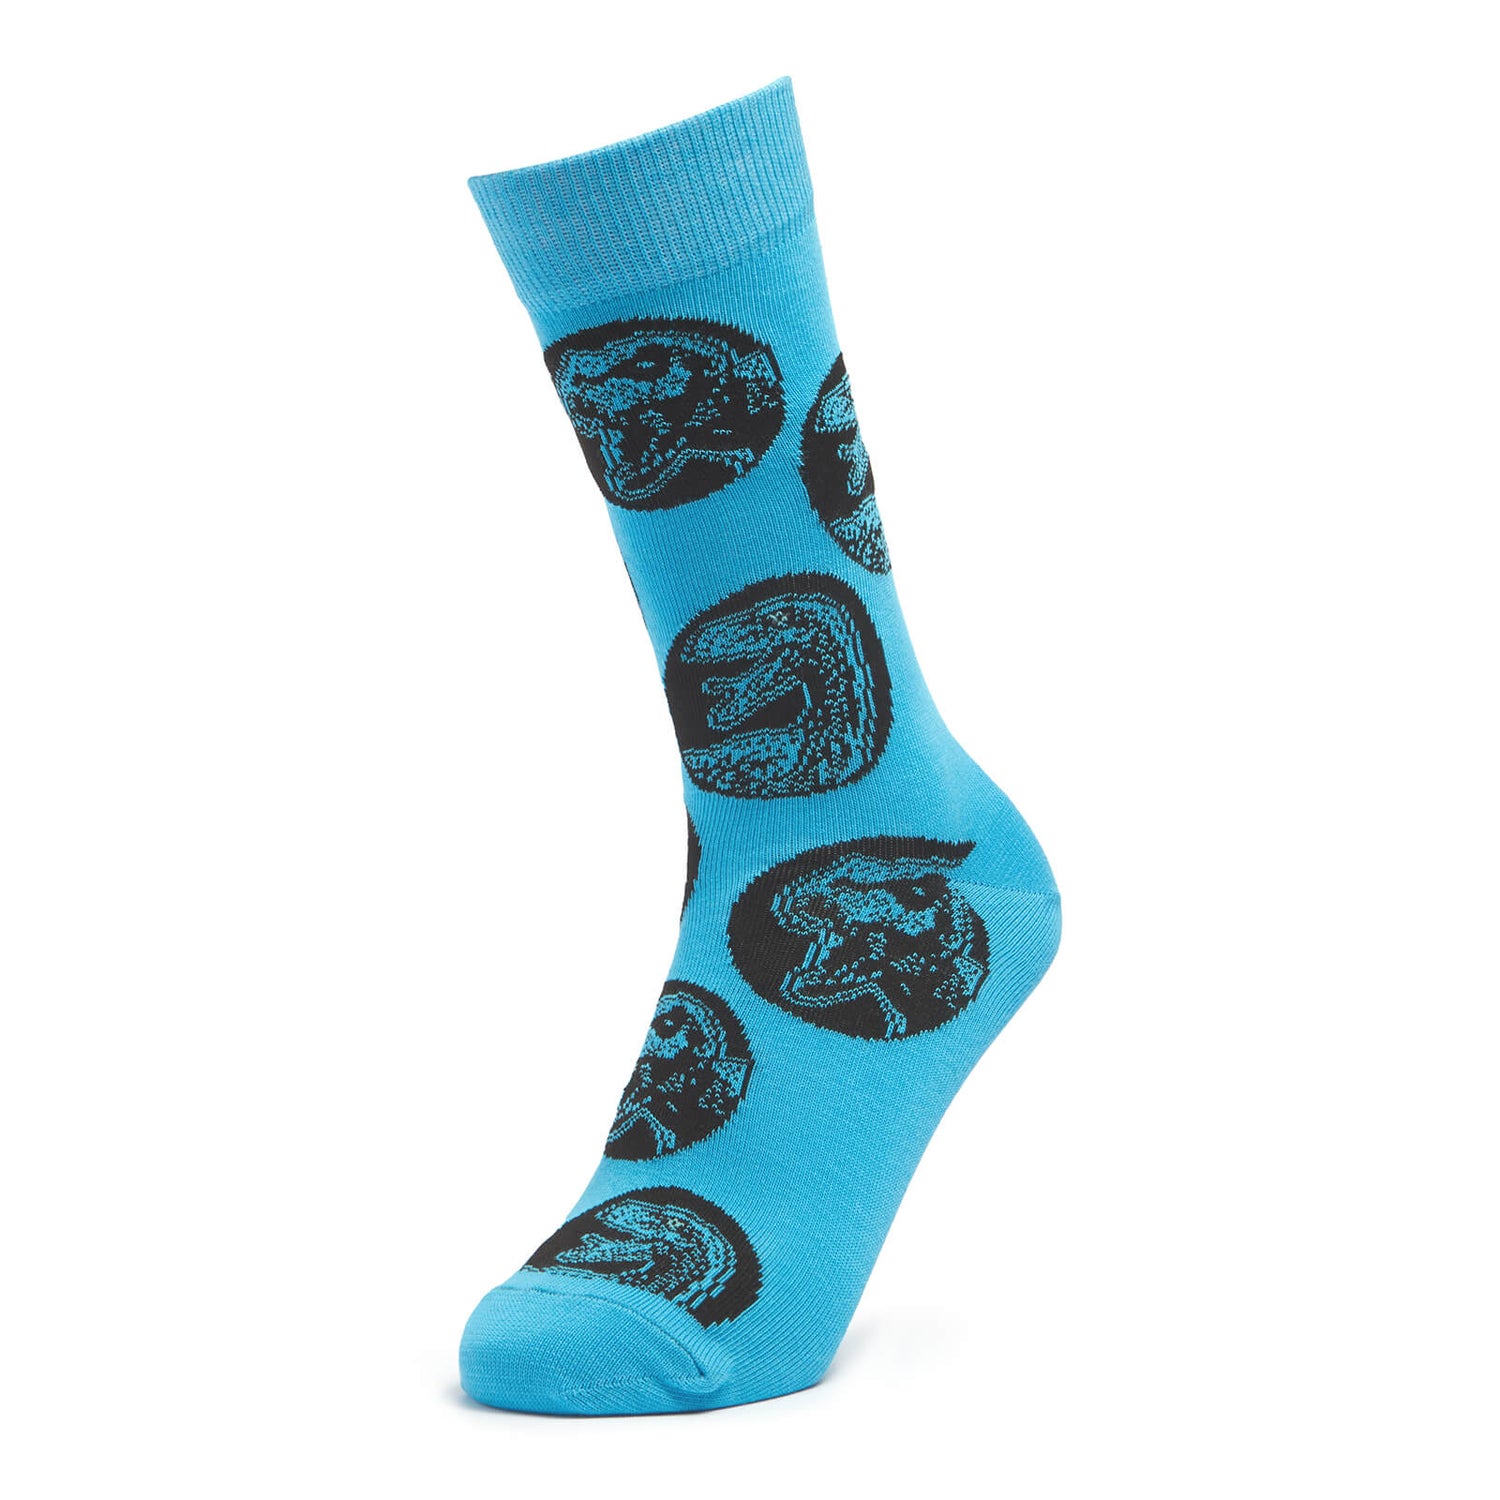 Men's Jurassic World Socks - Blue - UK 4-7.5